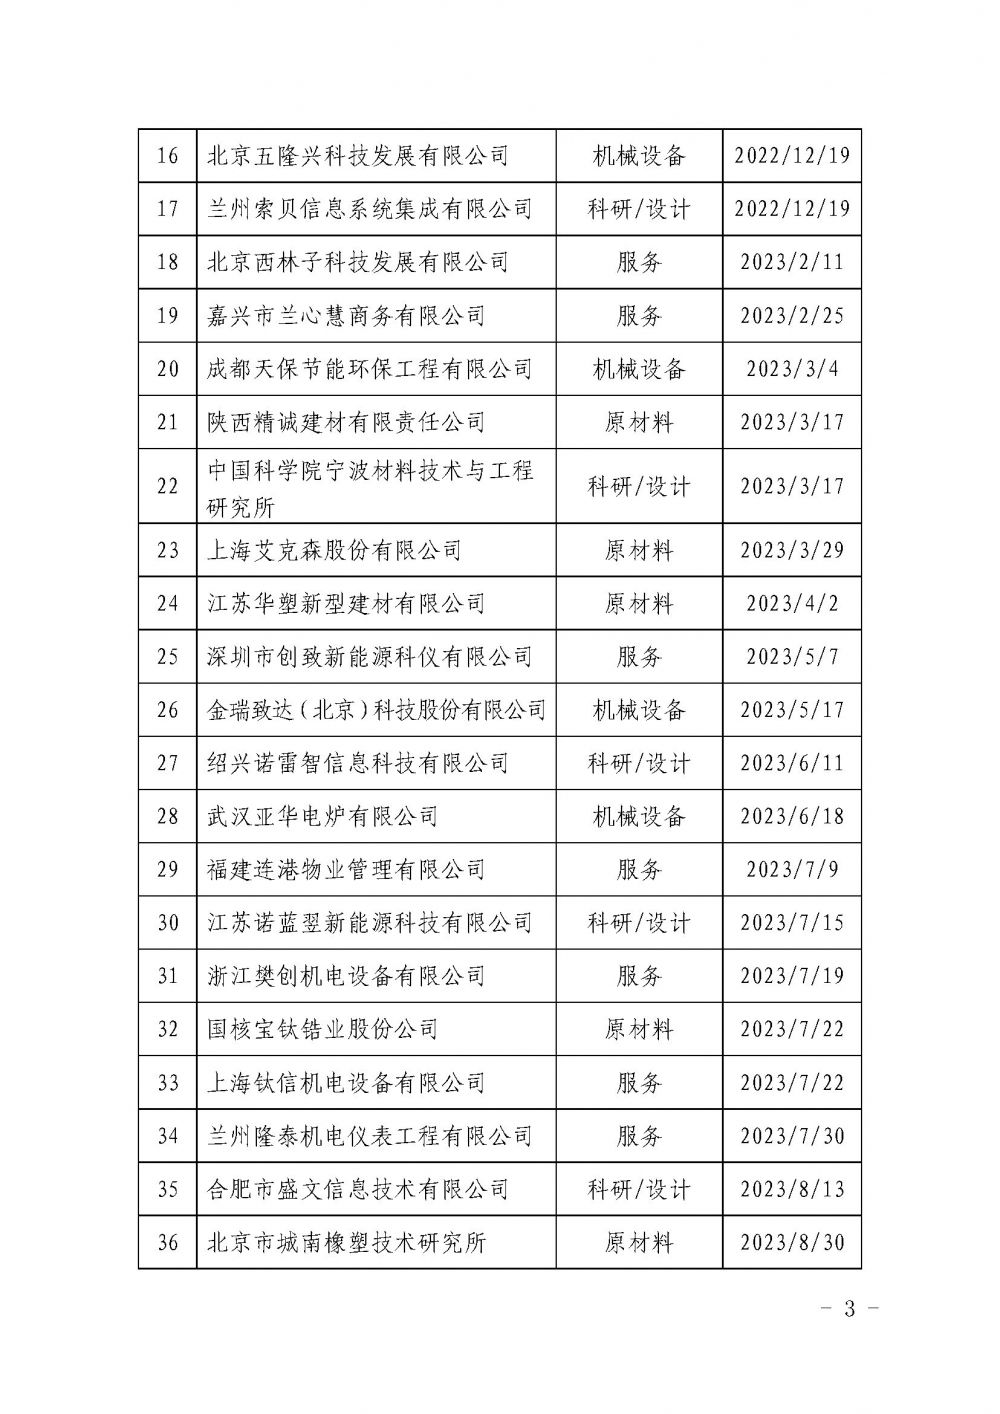 关于发布中国核能行业协会核能行业第十批合格供应商名录的公告_页面_3.jpg